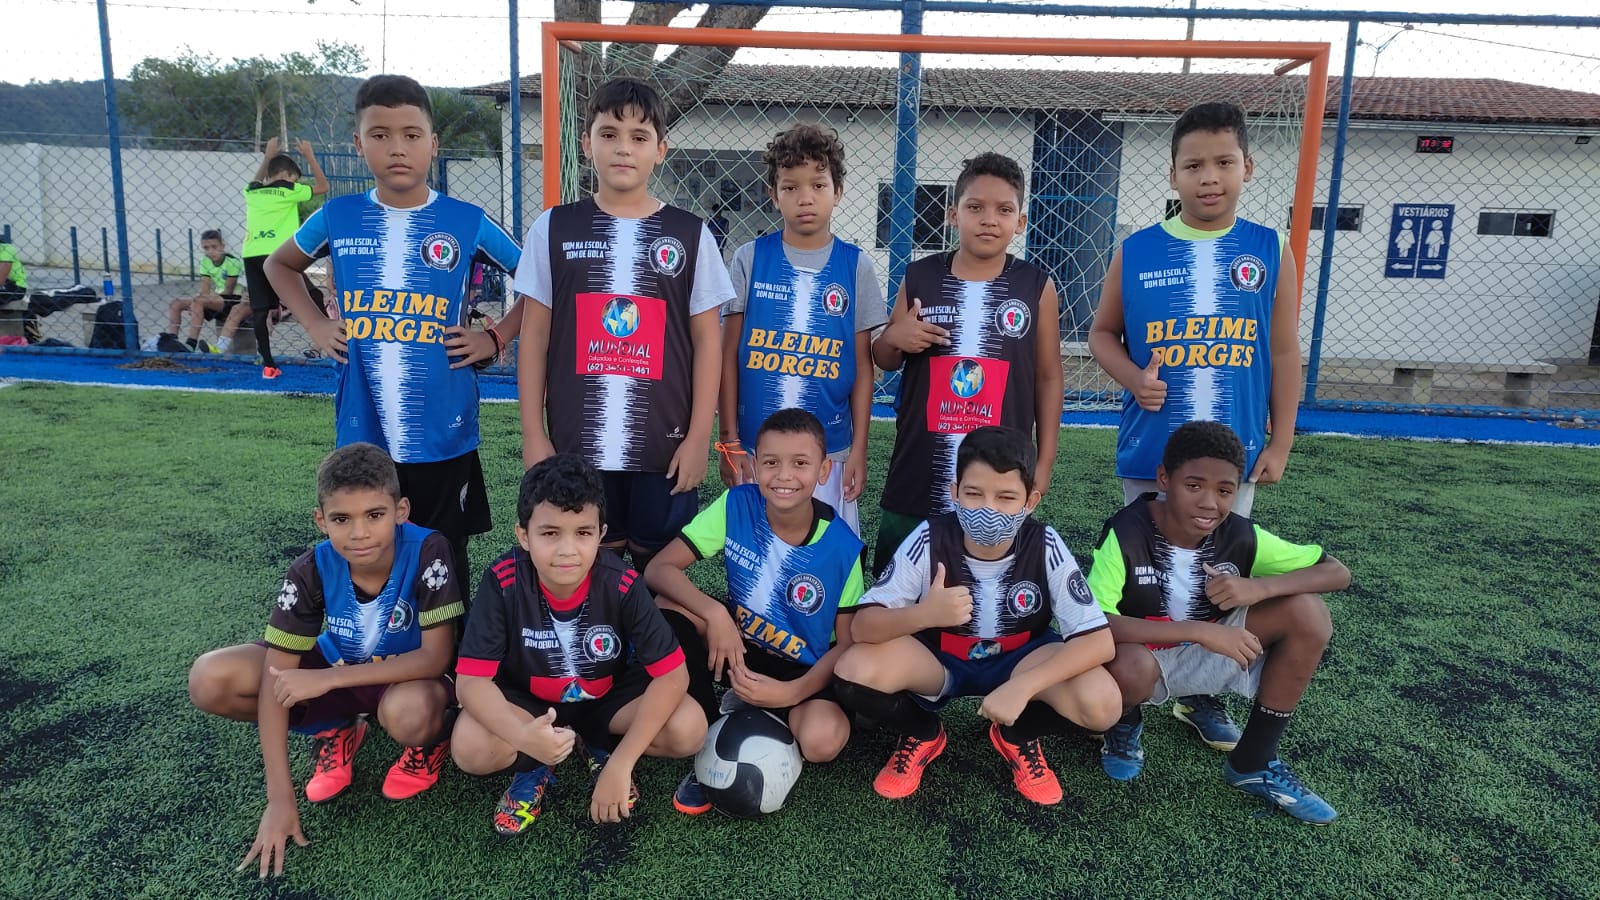 Escolinha de futebol em Campos Belos (GO) traz esperança e forma jovens cidadãos